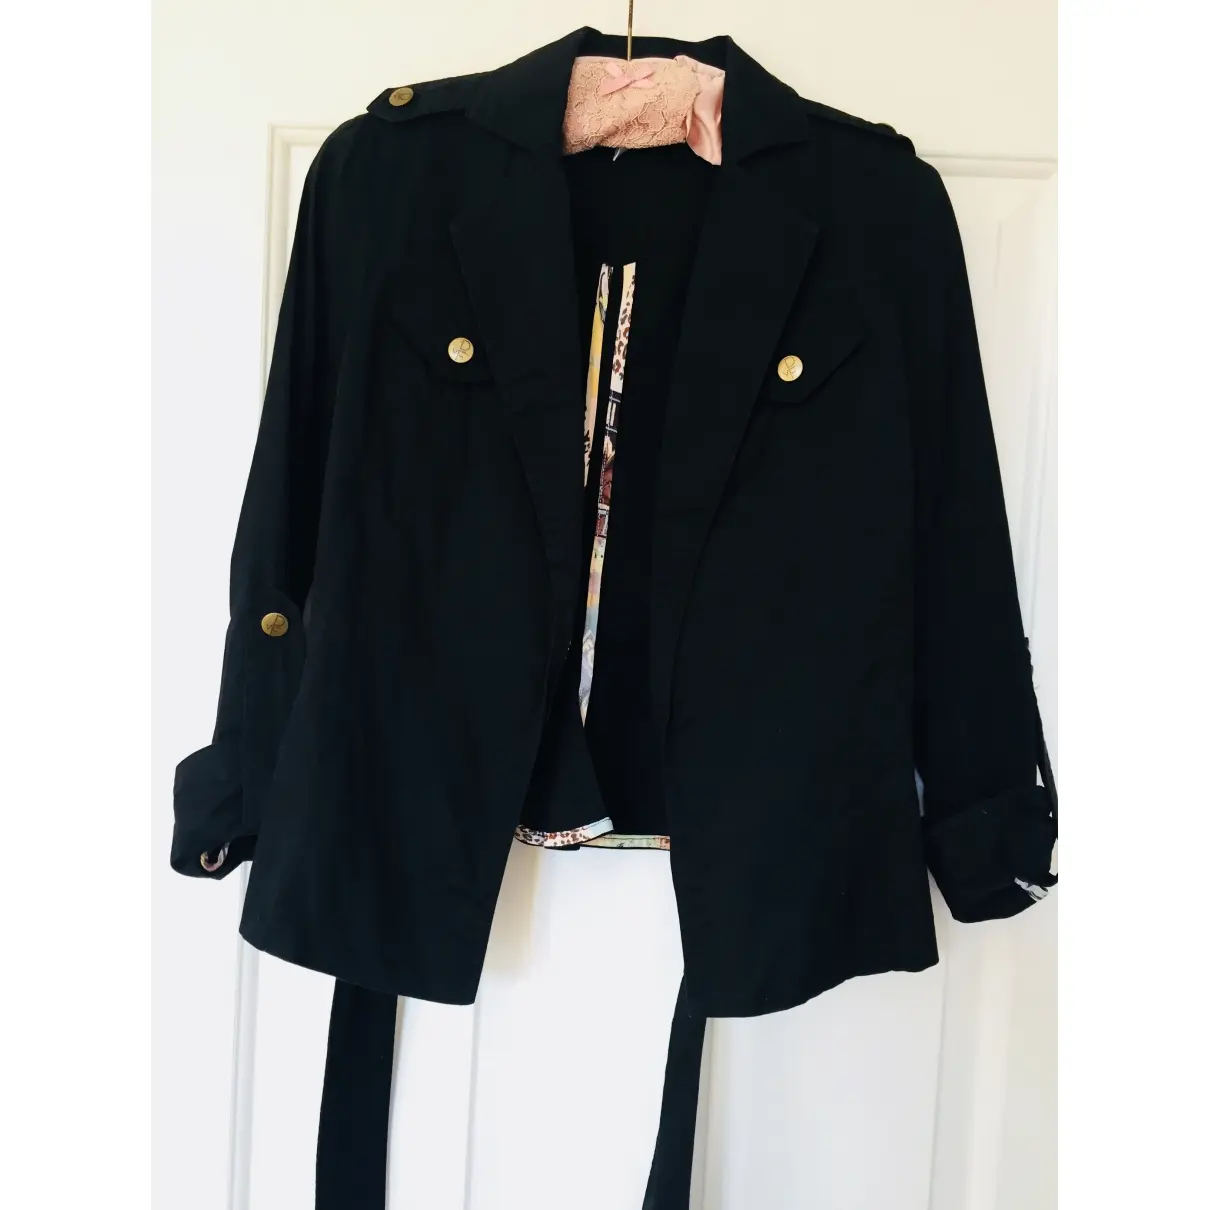 Buy Diane Von Furstenberg Jacket online